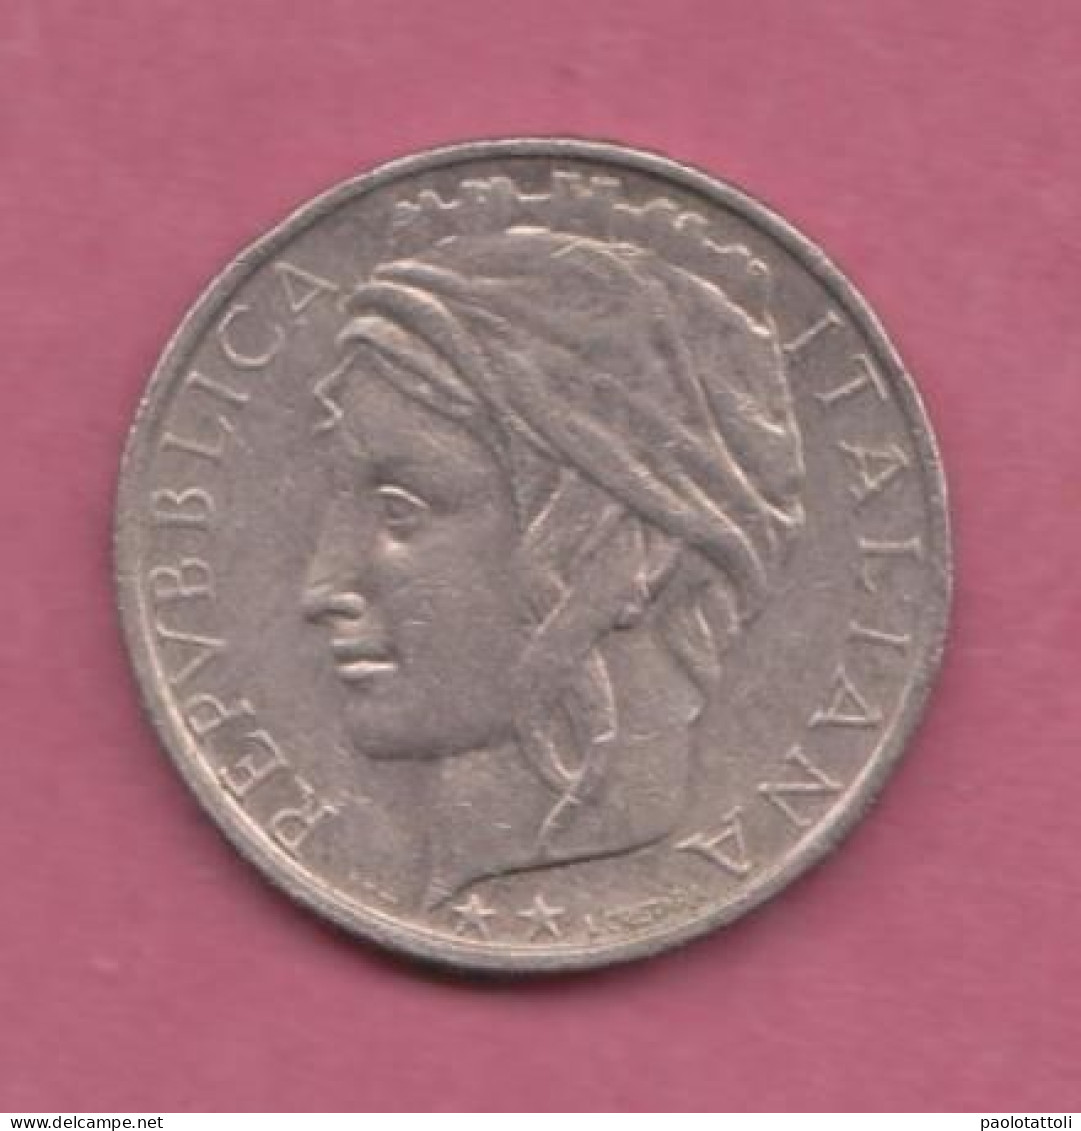 Italia, 1998- 100 Lire - Copper Nickel- Obverse Allegory Of The Repubblic. Reverse Denomination-   BB, VF, TTB, SS - 100 Lire